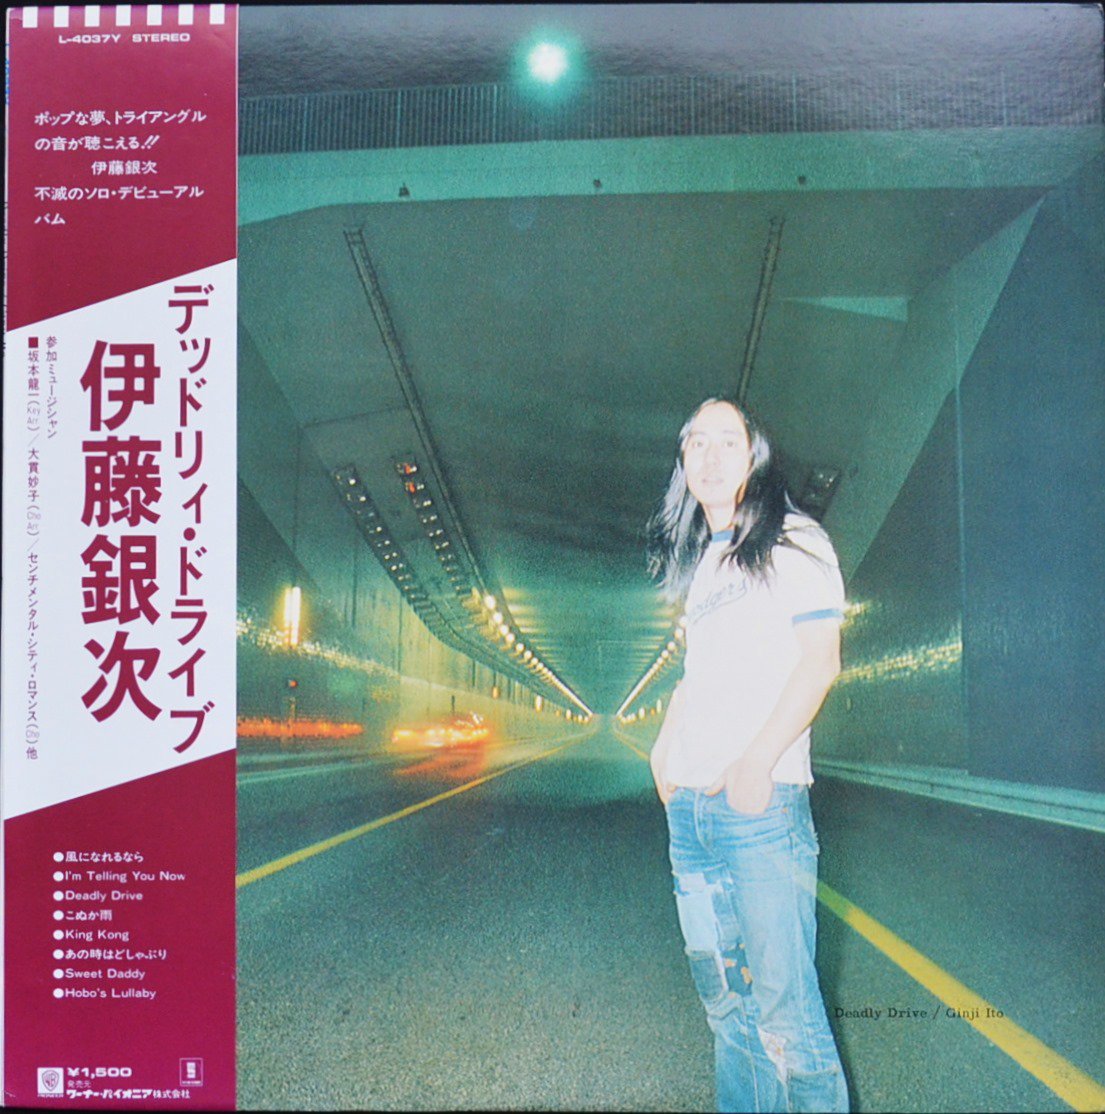 伊藤銀次 GINJI ITO / デッドリィ・ドライブ DEADLY DRIVE (LP) - HIP 